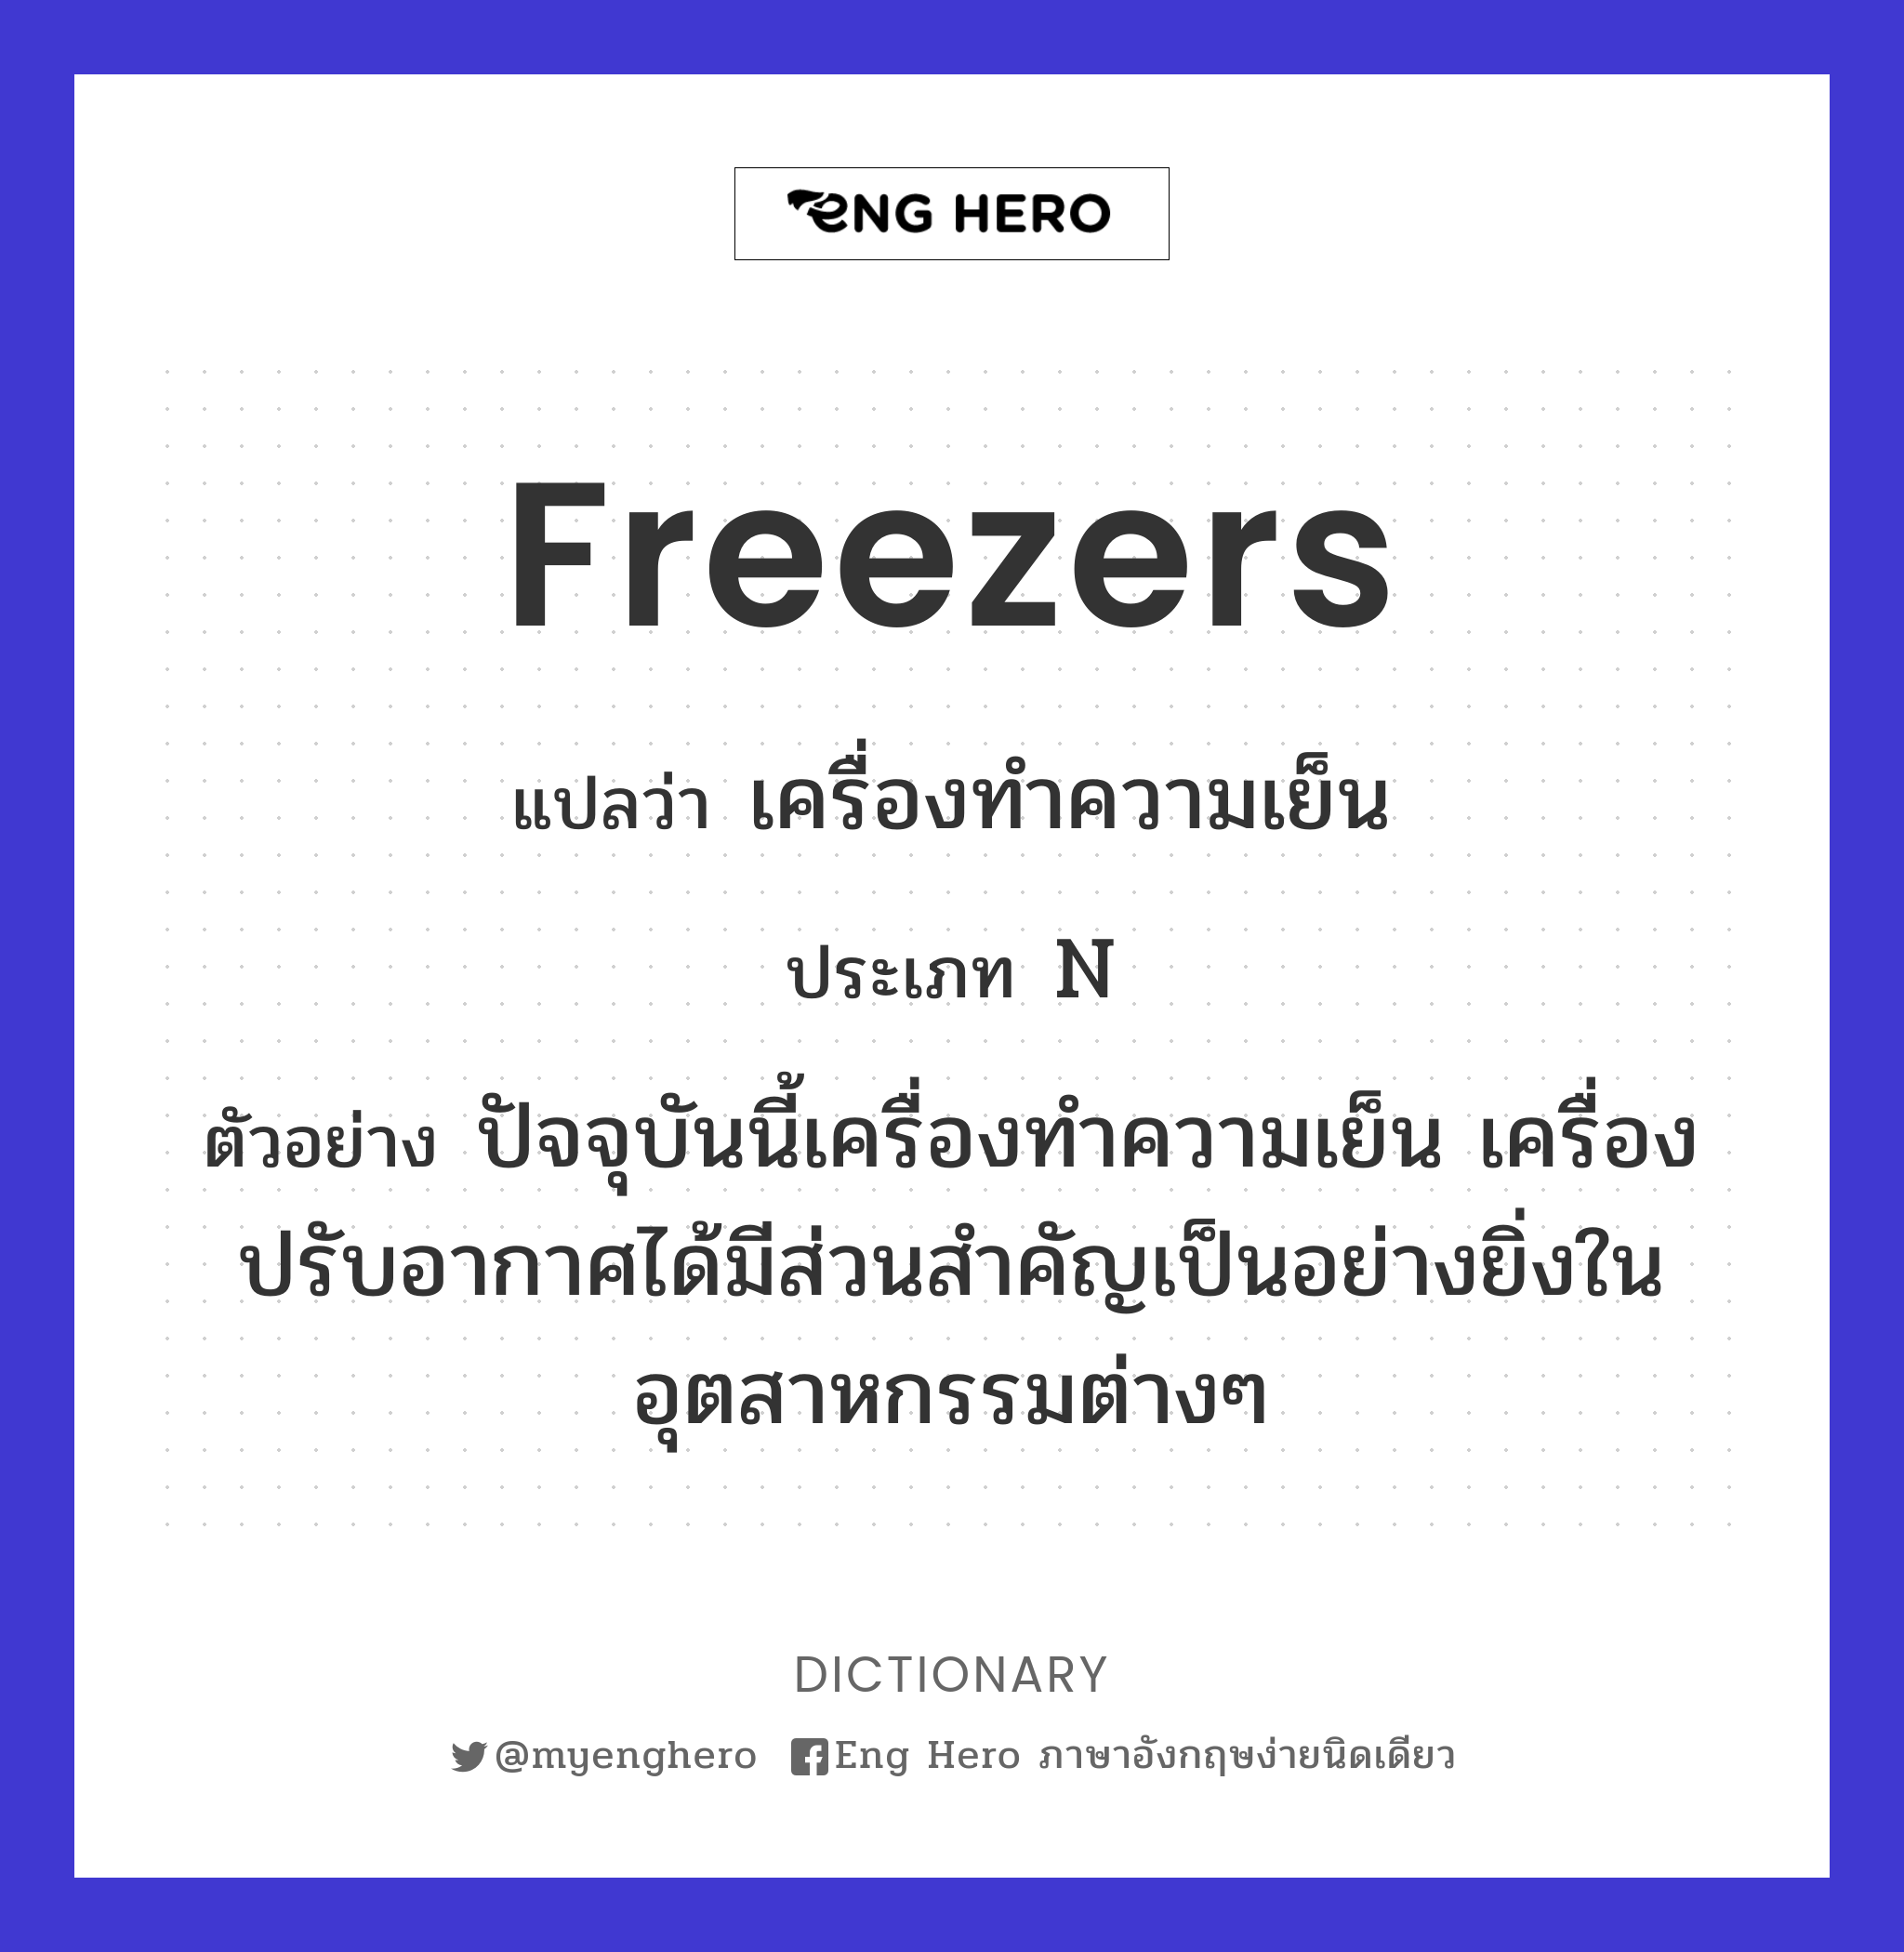 freezers